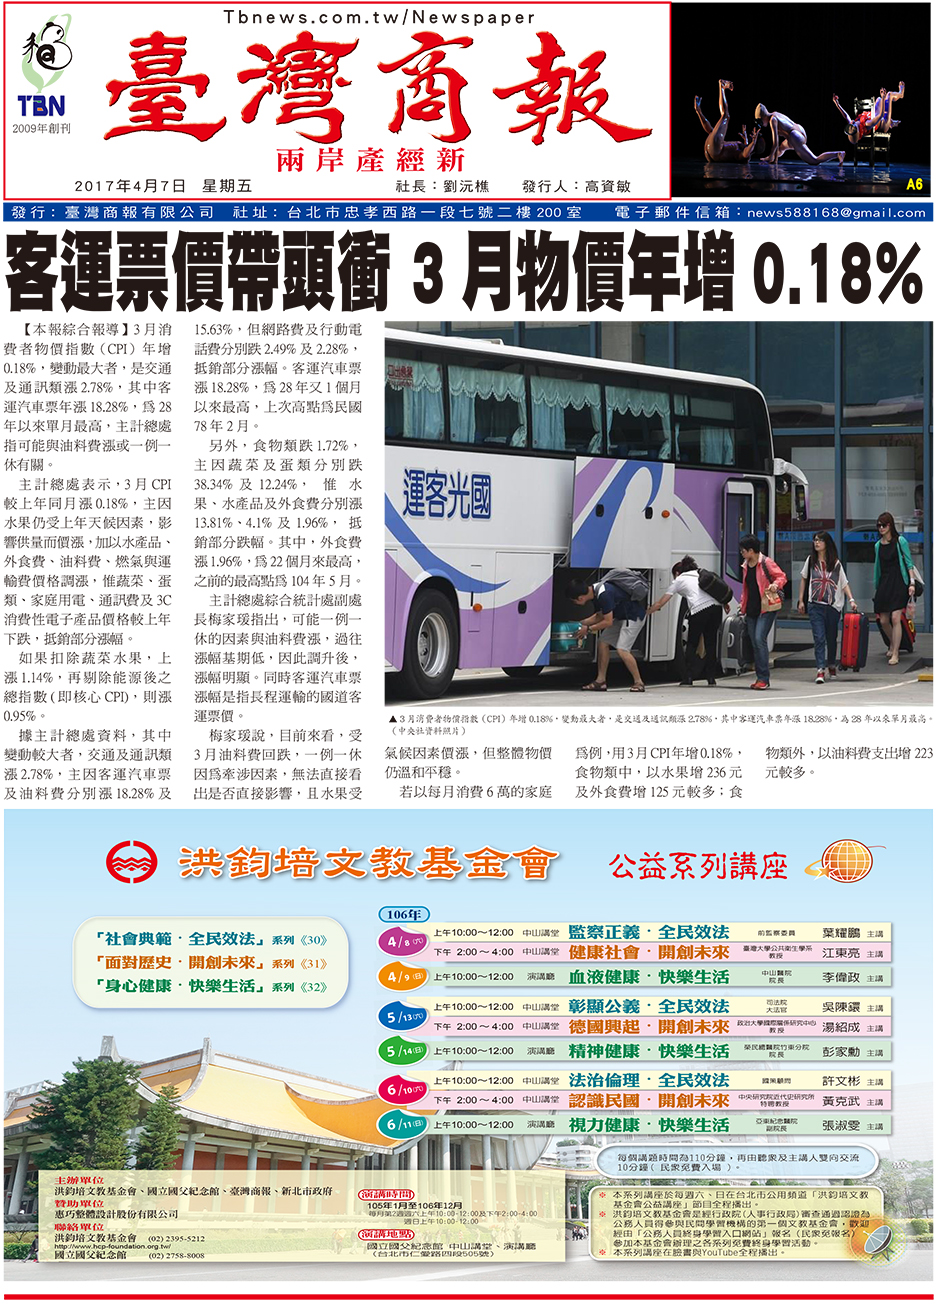 客運票價帶頭衝 3 月物價年增 0.18%